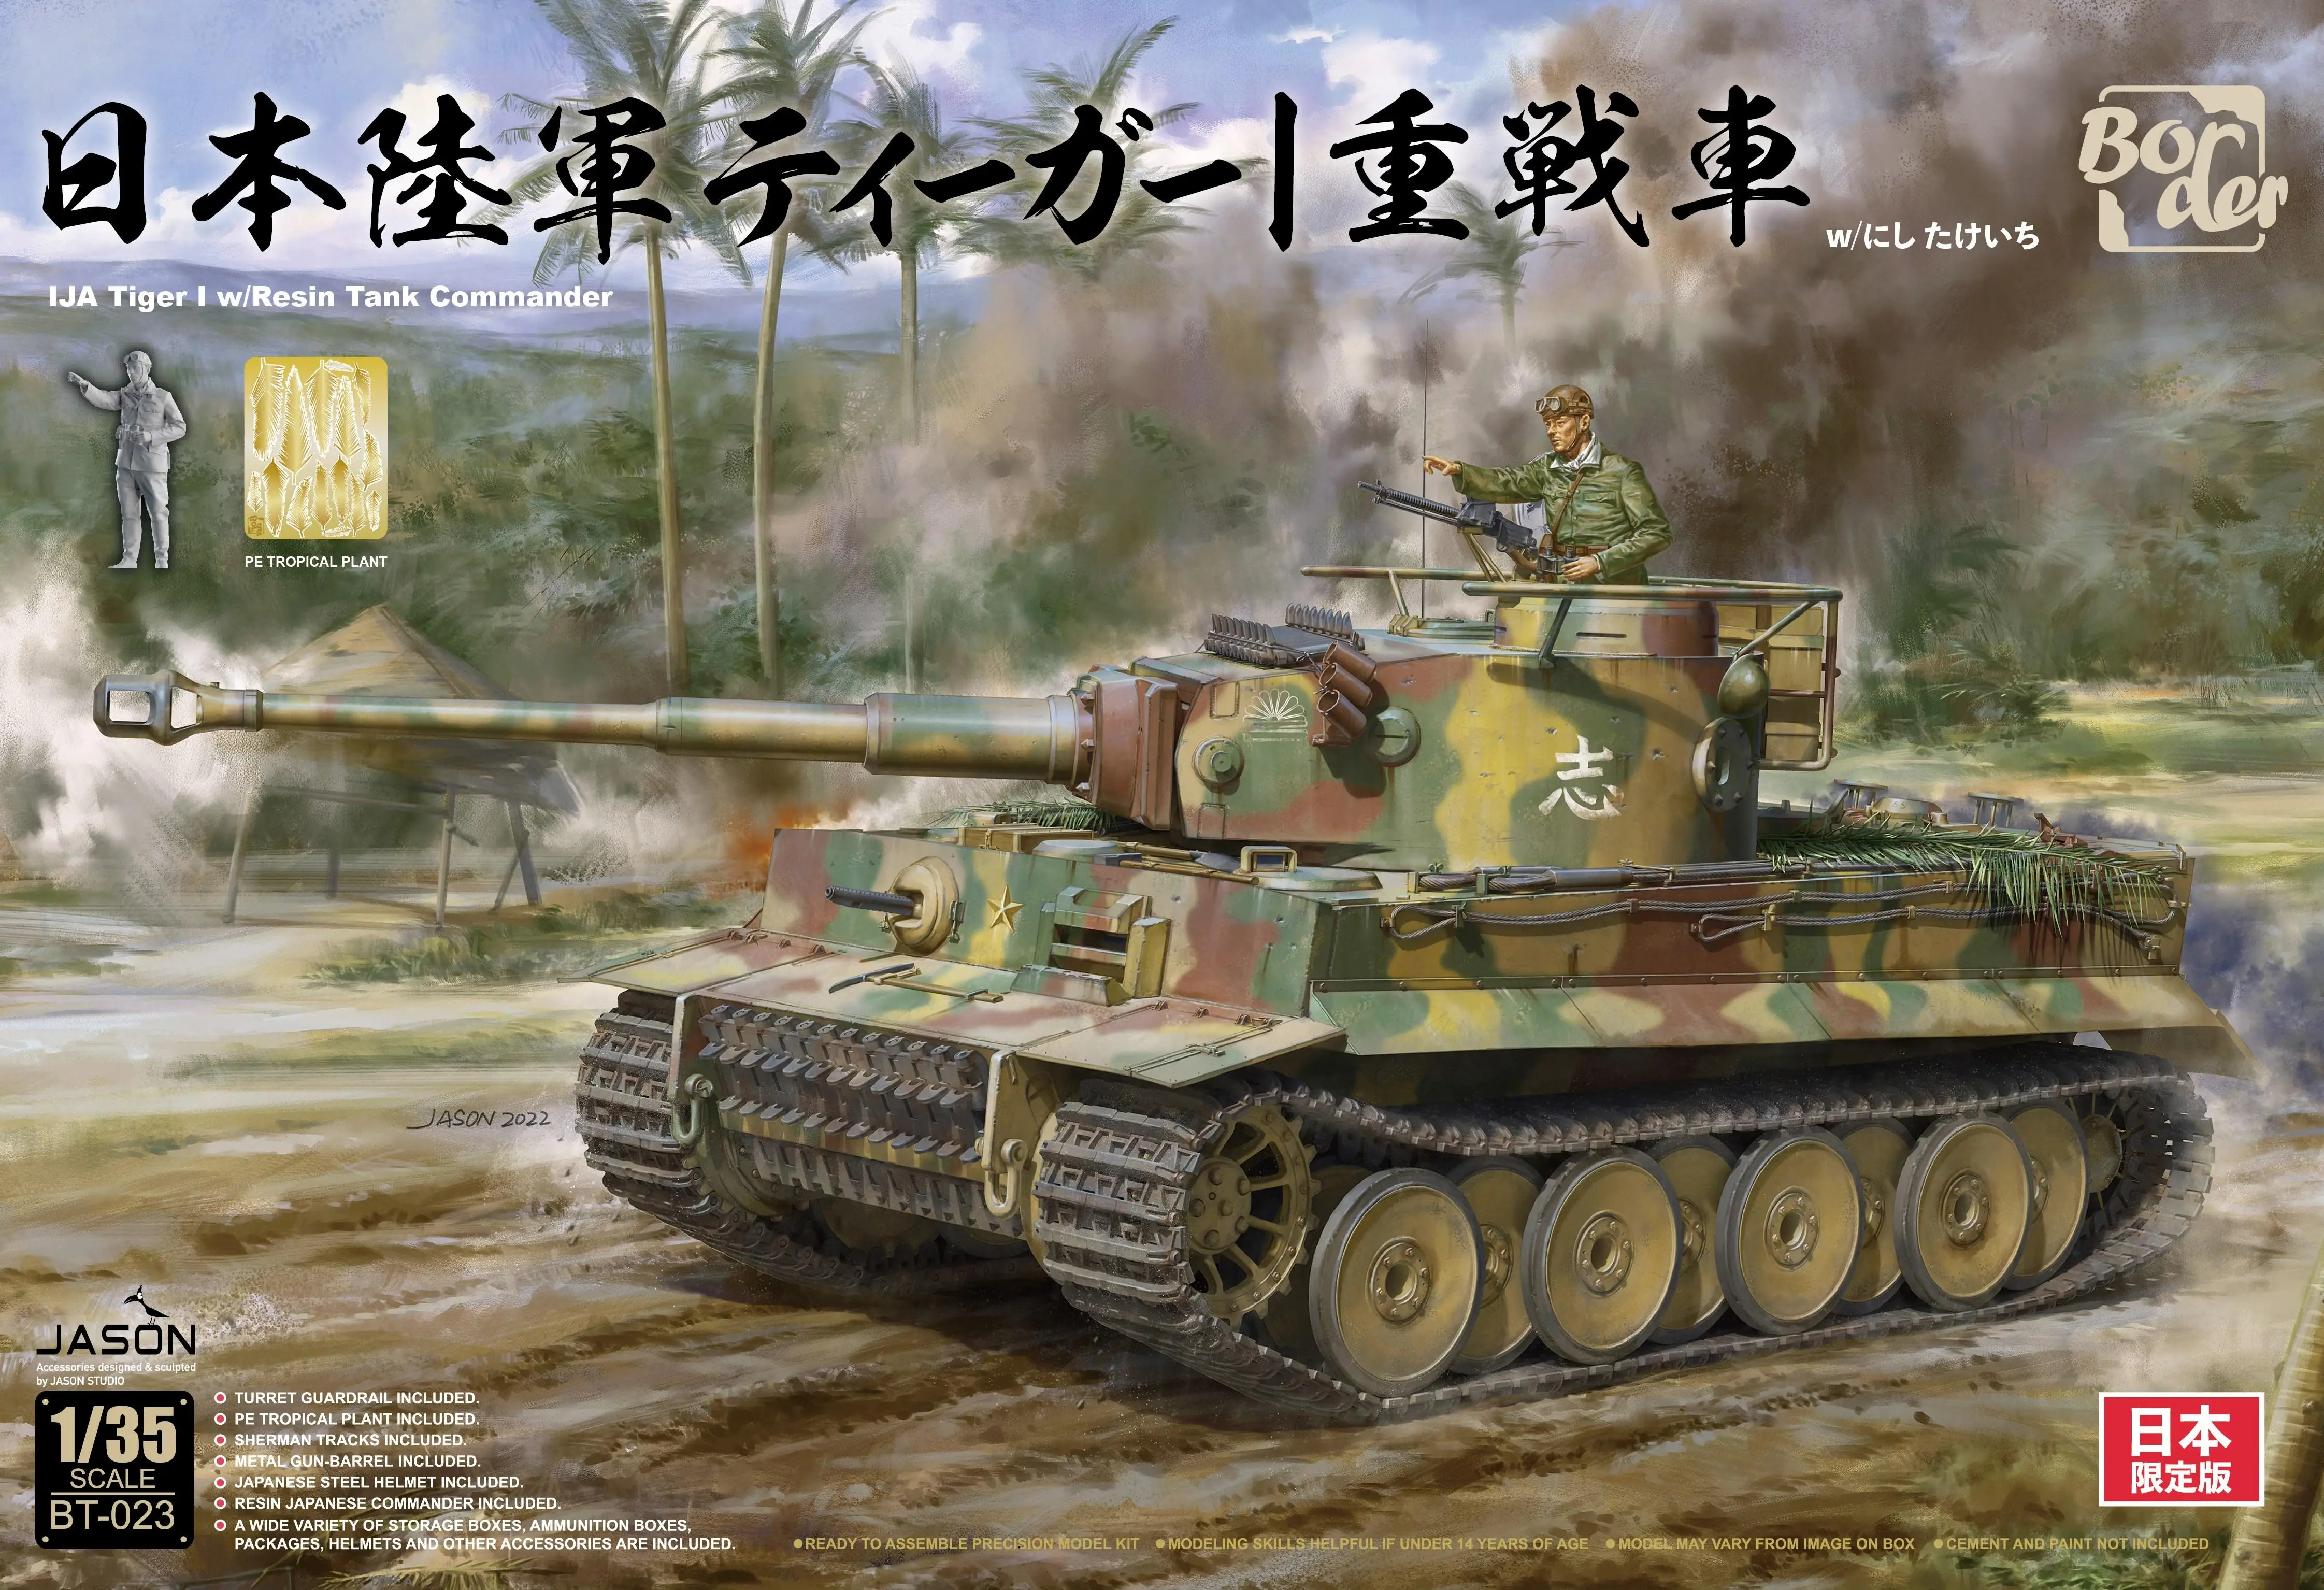 Border BT-023 1/35 Tiger Tank Начального типа, комплект для боя в Юго-Восточной Азии